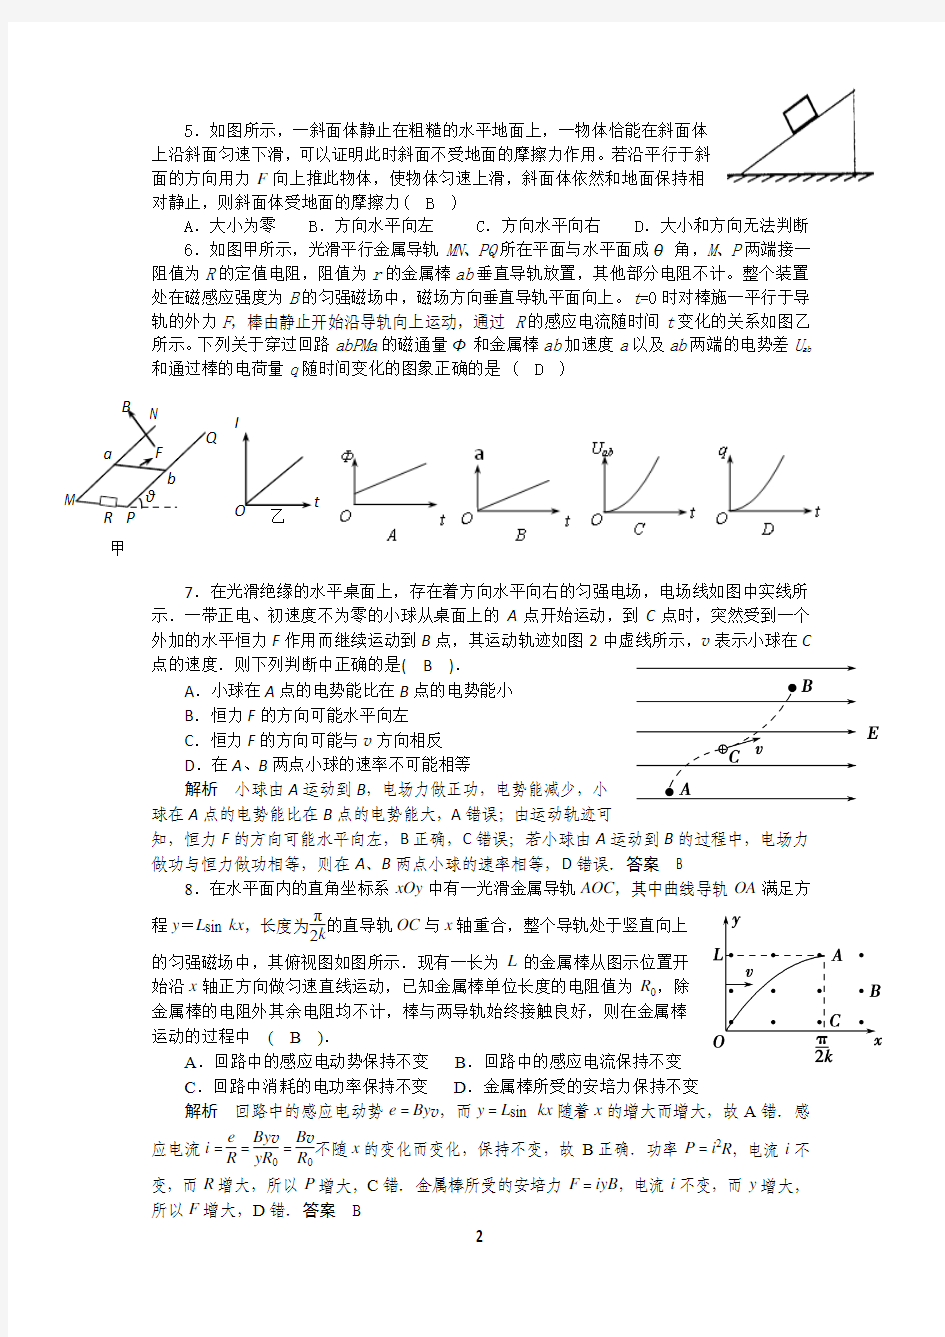 (教师版)2015高考物理名师精编经典复习题二十五道